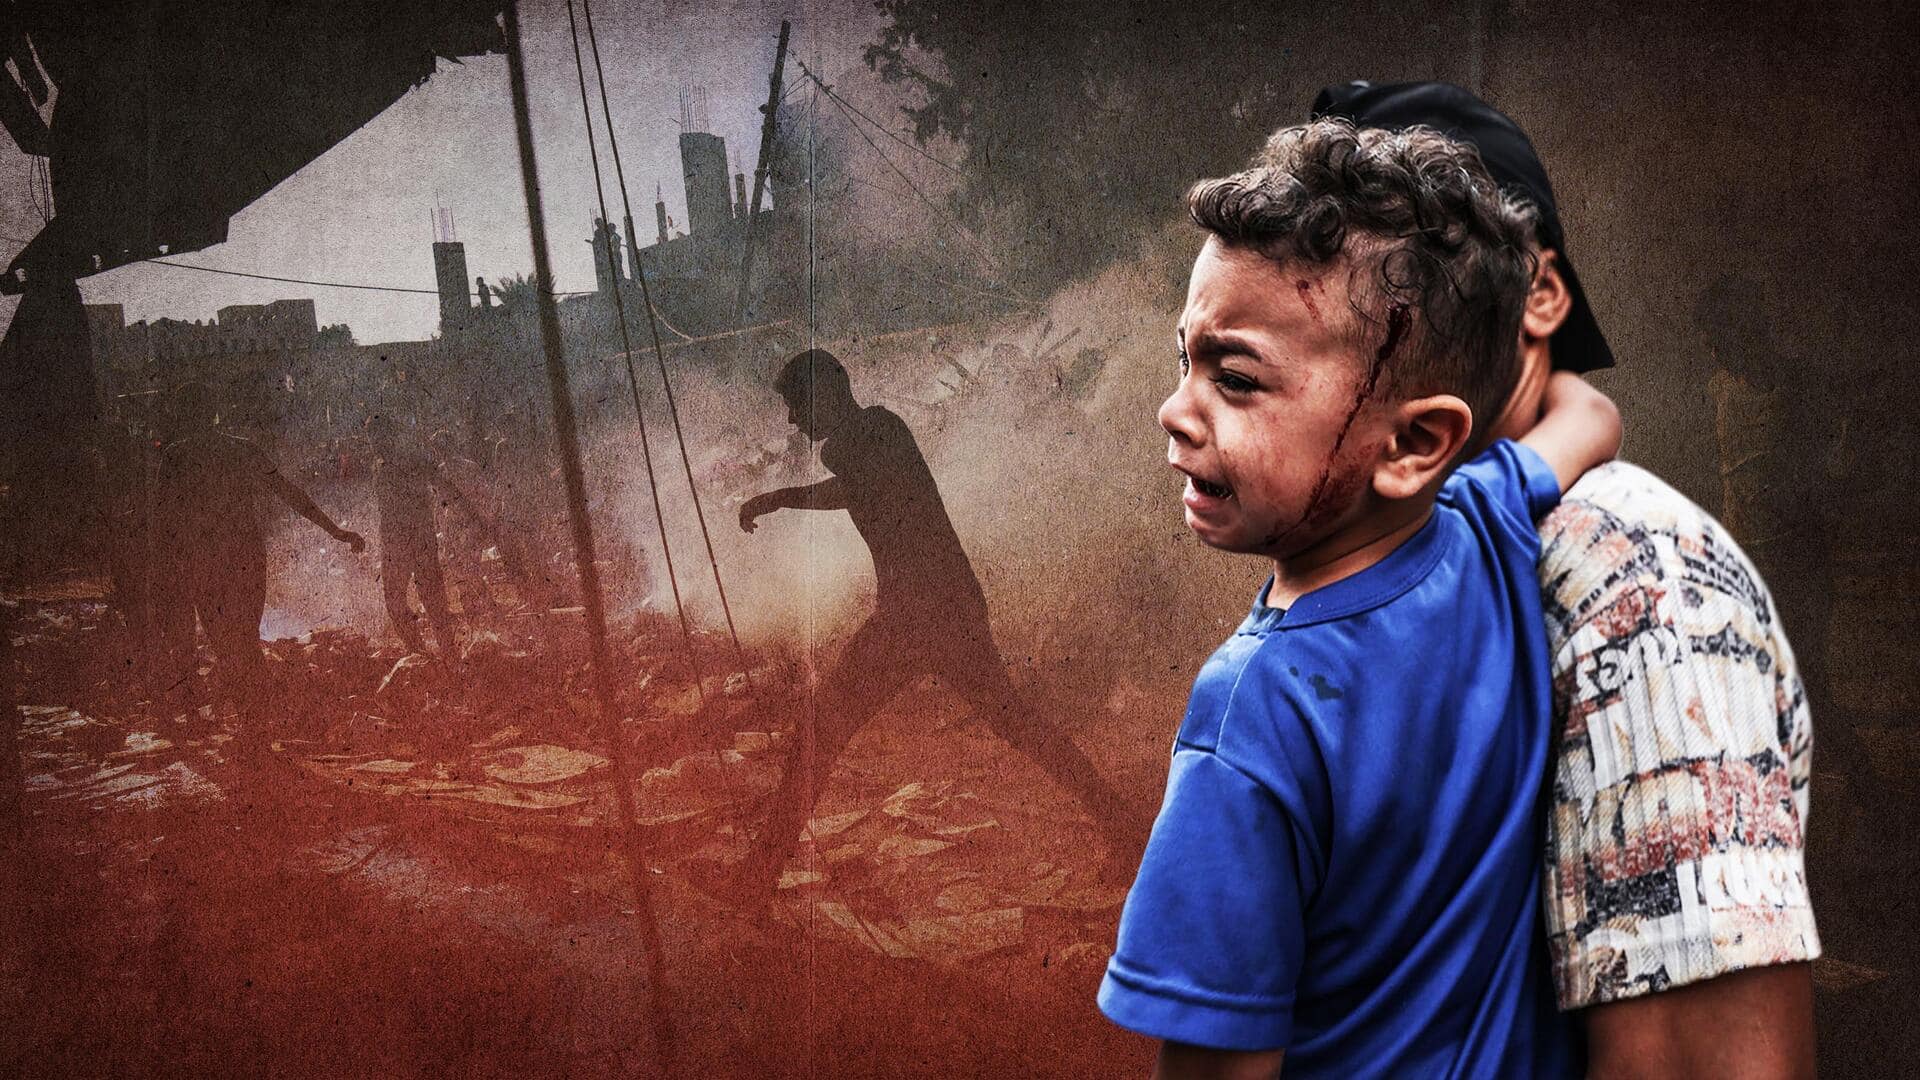 इजरायल-हमास युद्ध: IDF अस्पताल में फंसे बच्चों की मदद को तैयार, युद्धविराम से साफ इनकार